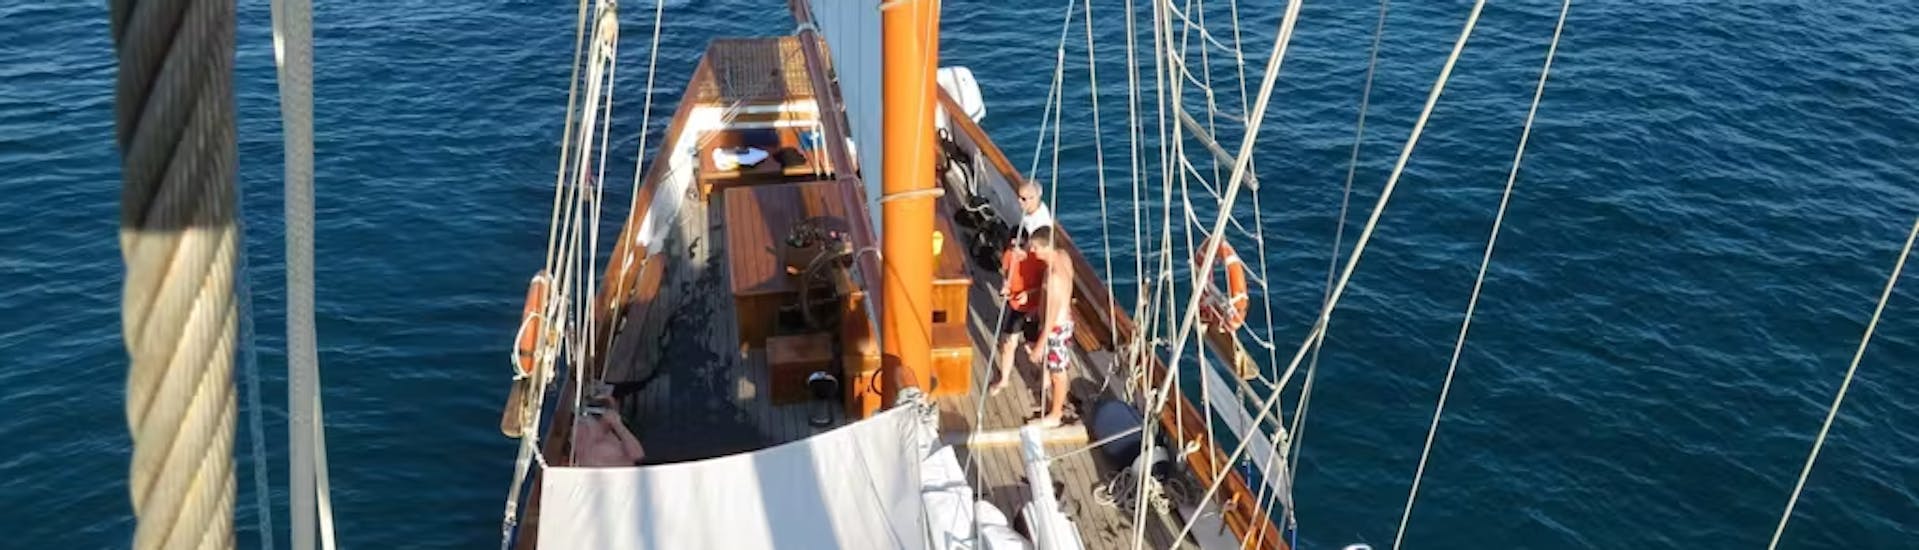 Paseo especial en barco a Marsella - Juegos Olímpicos.